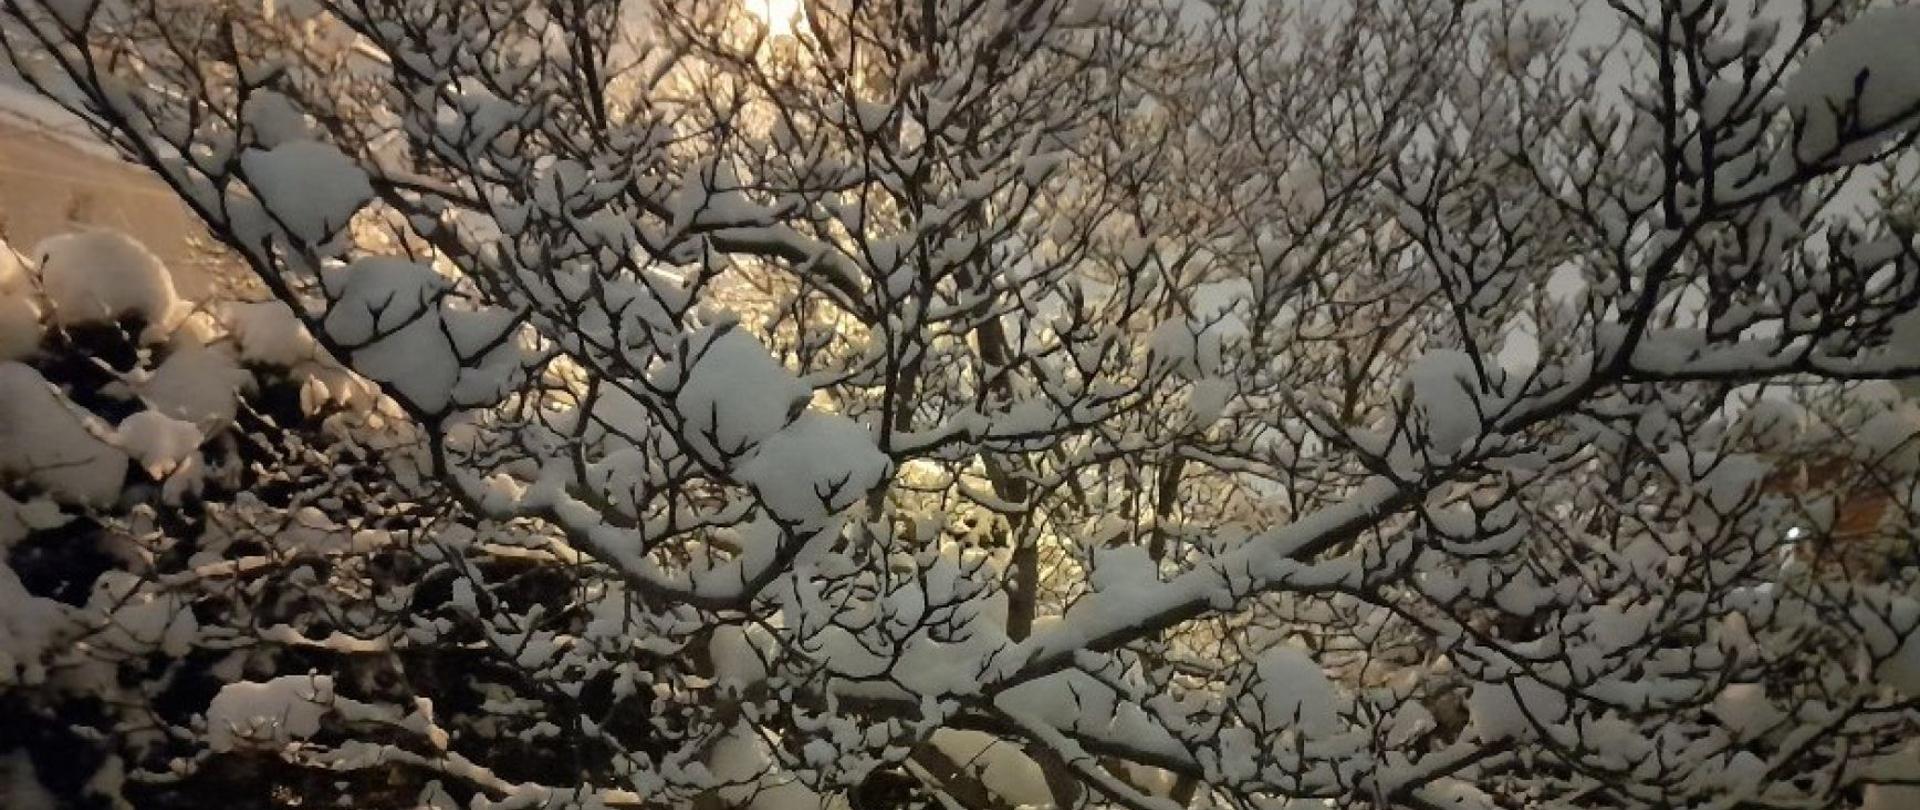 noc, drzewo pokryte śniegiem, w tle latarnia uliczna